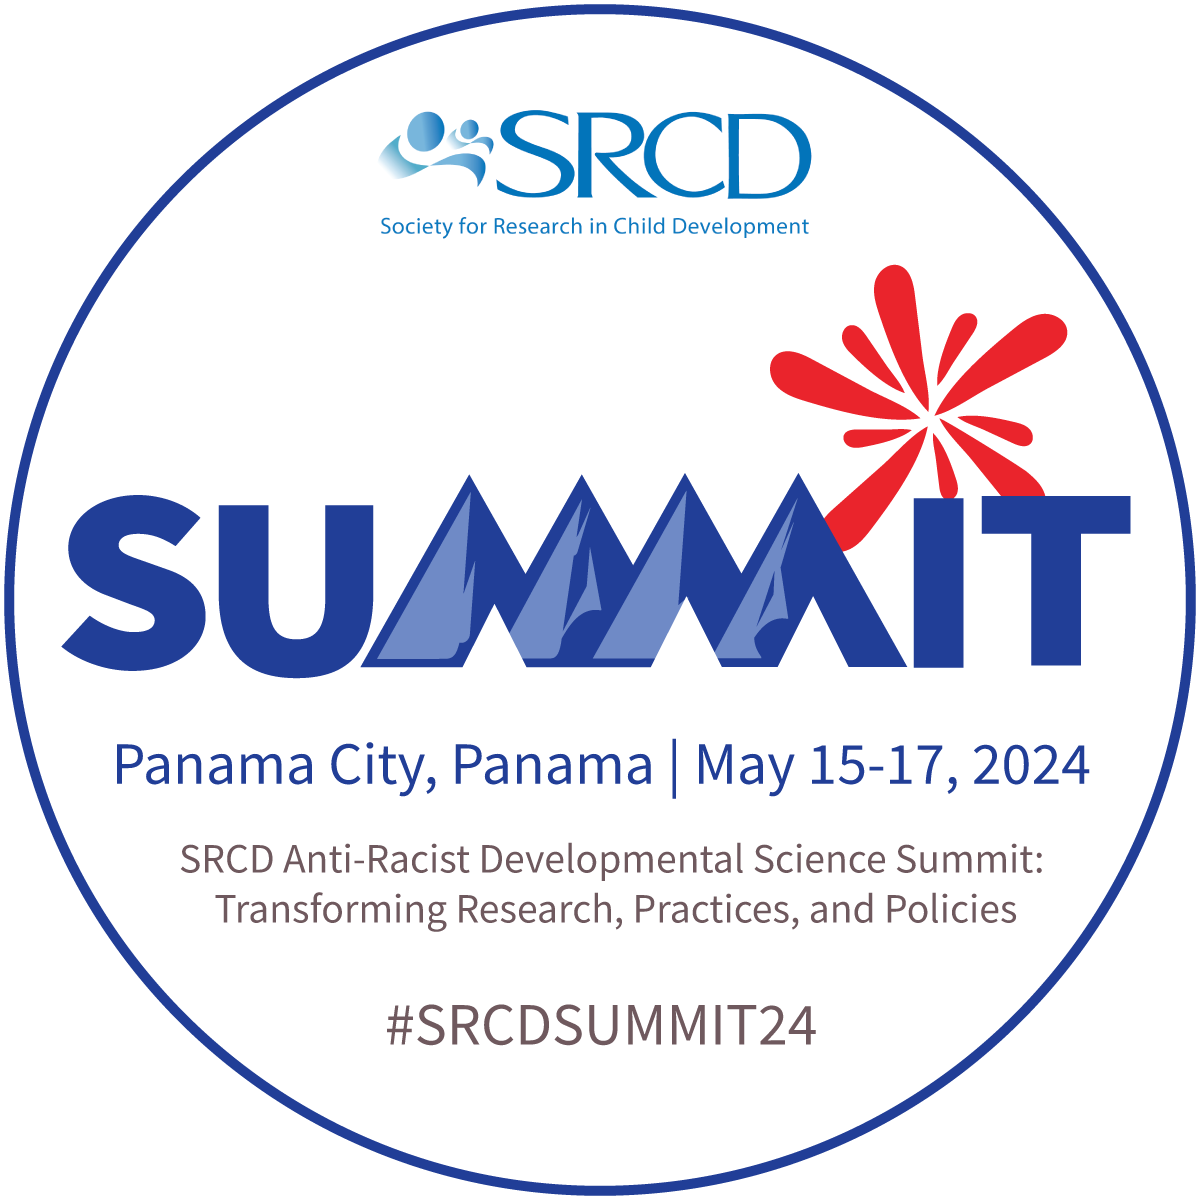 SRCD Summit Panama City, Panama